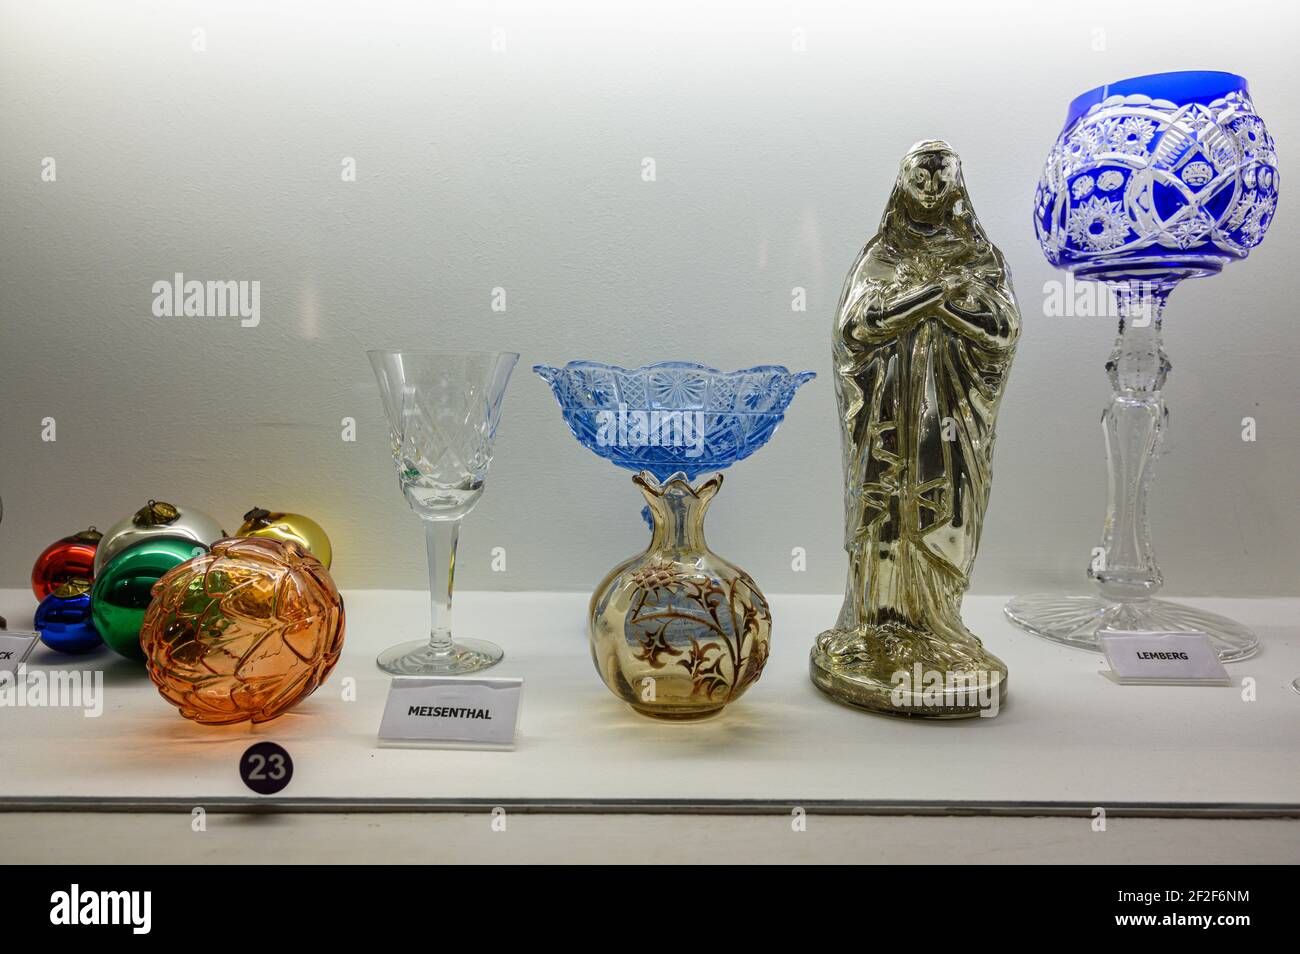 Mostra-case con oggetti in vetro fatti a mano. Decorazioni in vetro, bicchieri e scultura. Vetreria Meisenthal, Mosella, Francia. Foto Stock